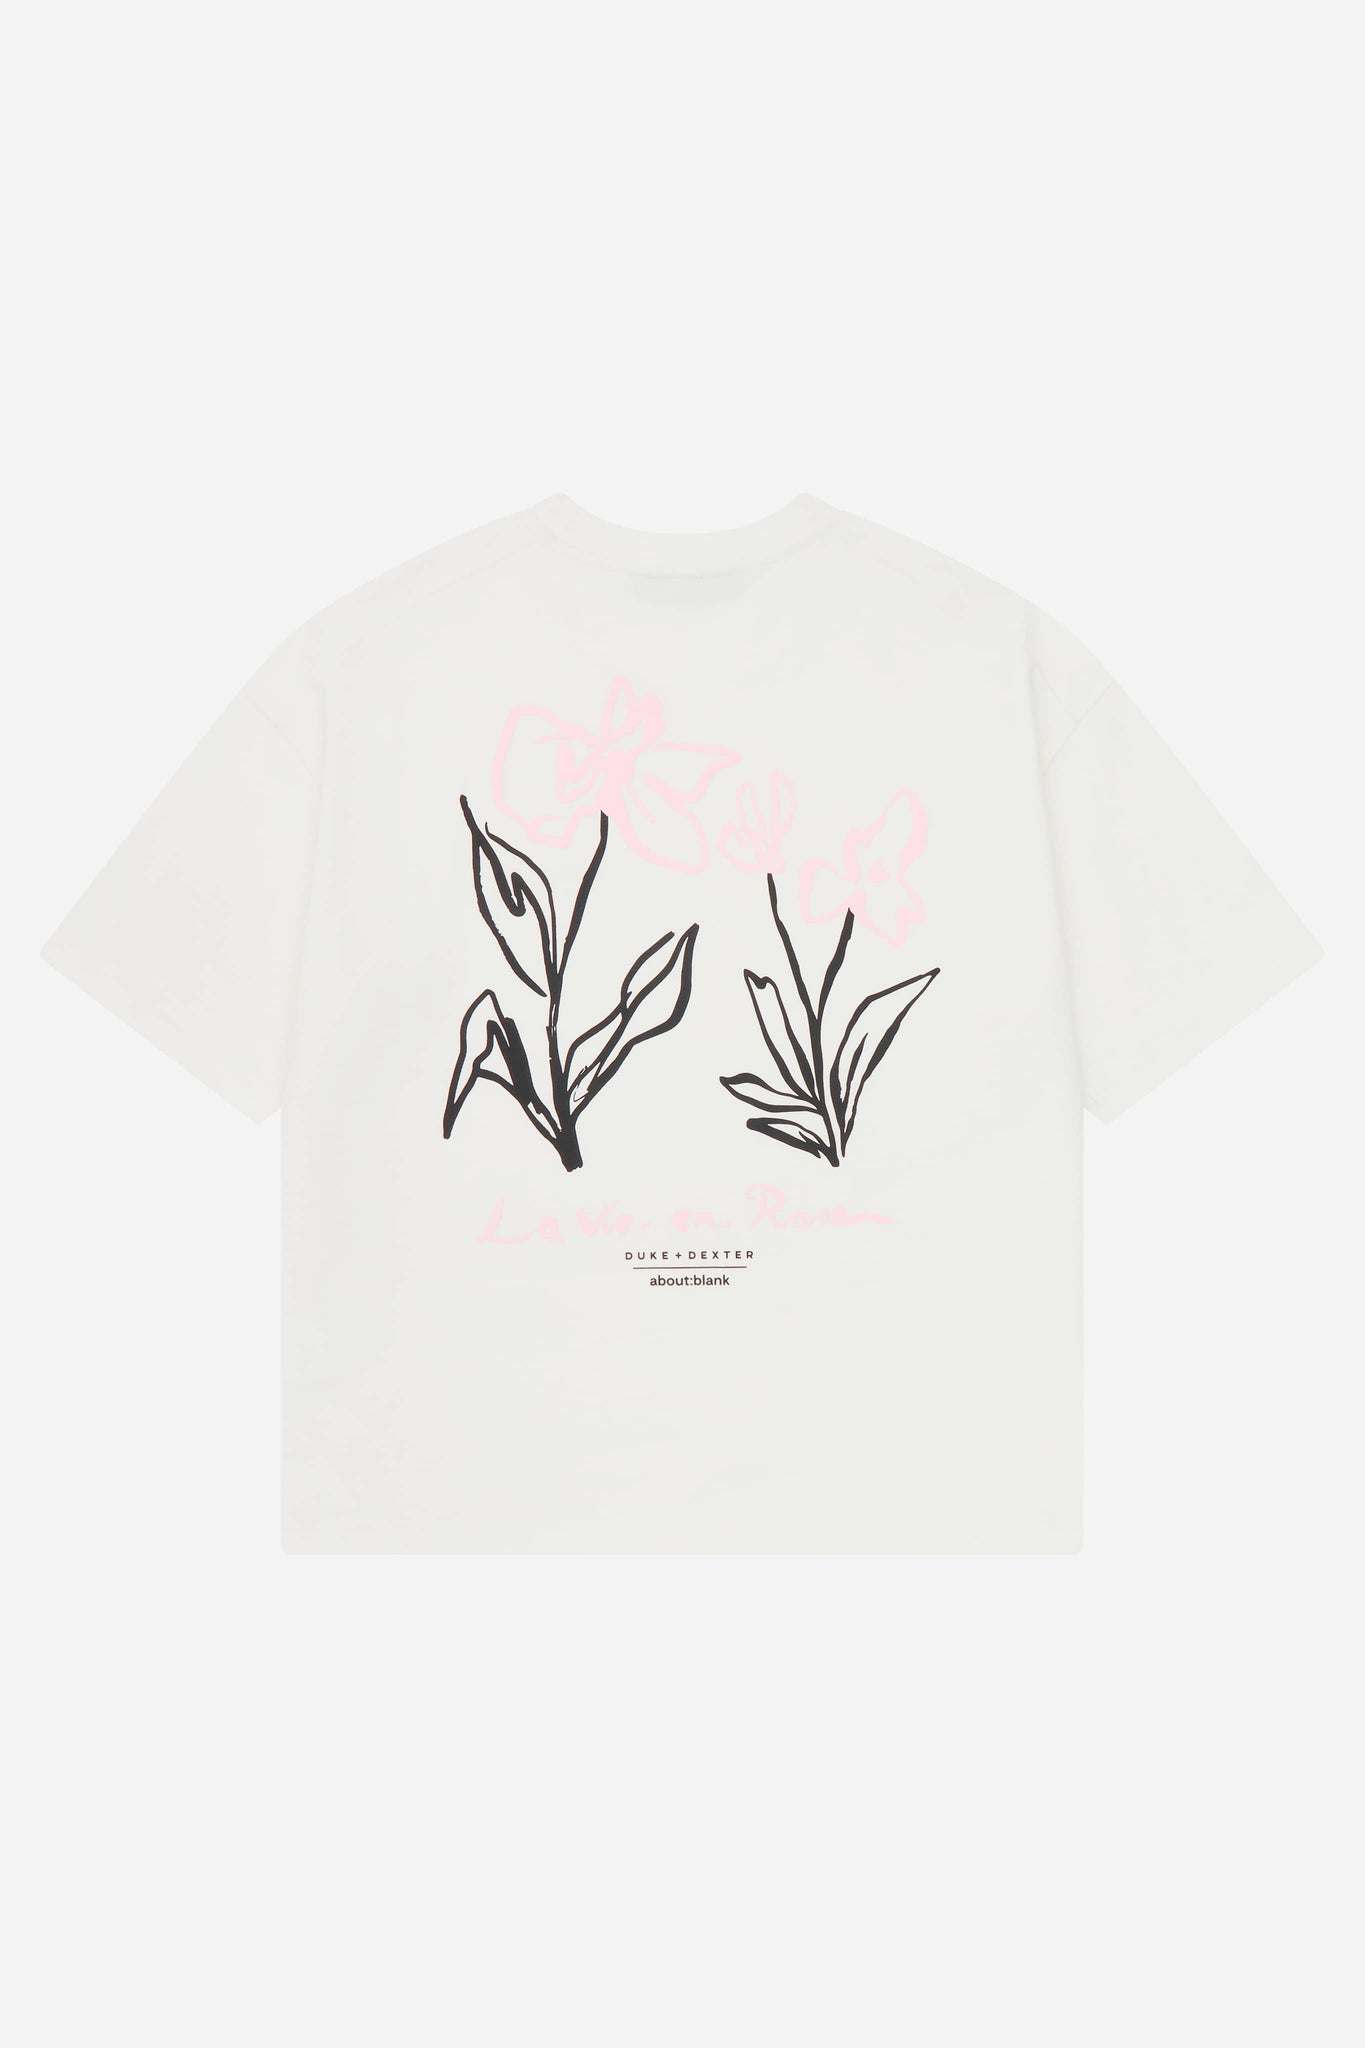 la vie en rose t-shirt oat/pink x duke + dexter